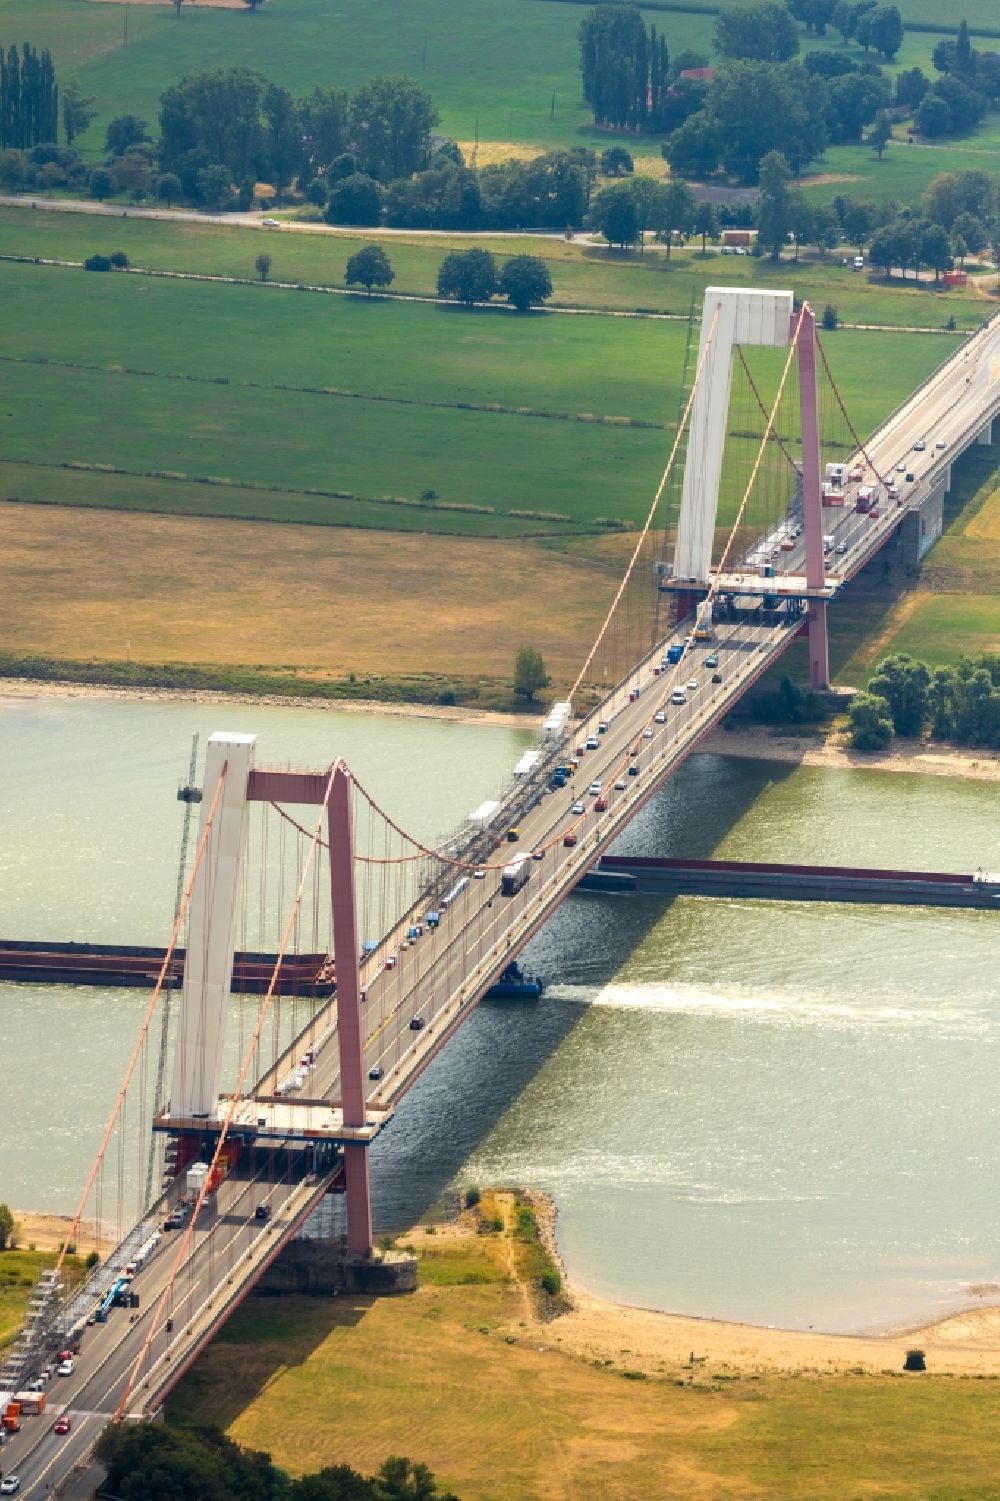 Luftbild Emmerich am Rhein - Baustelle zu Sanierungsarbeiten am Straßen- Brückenbauwerk der Rheinbrücke in Emmerich am Rhein im Bundesland Nordrhein-Westfalen, Deutschland